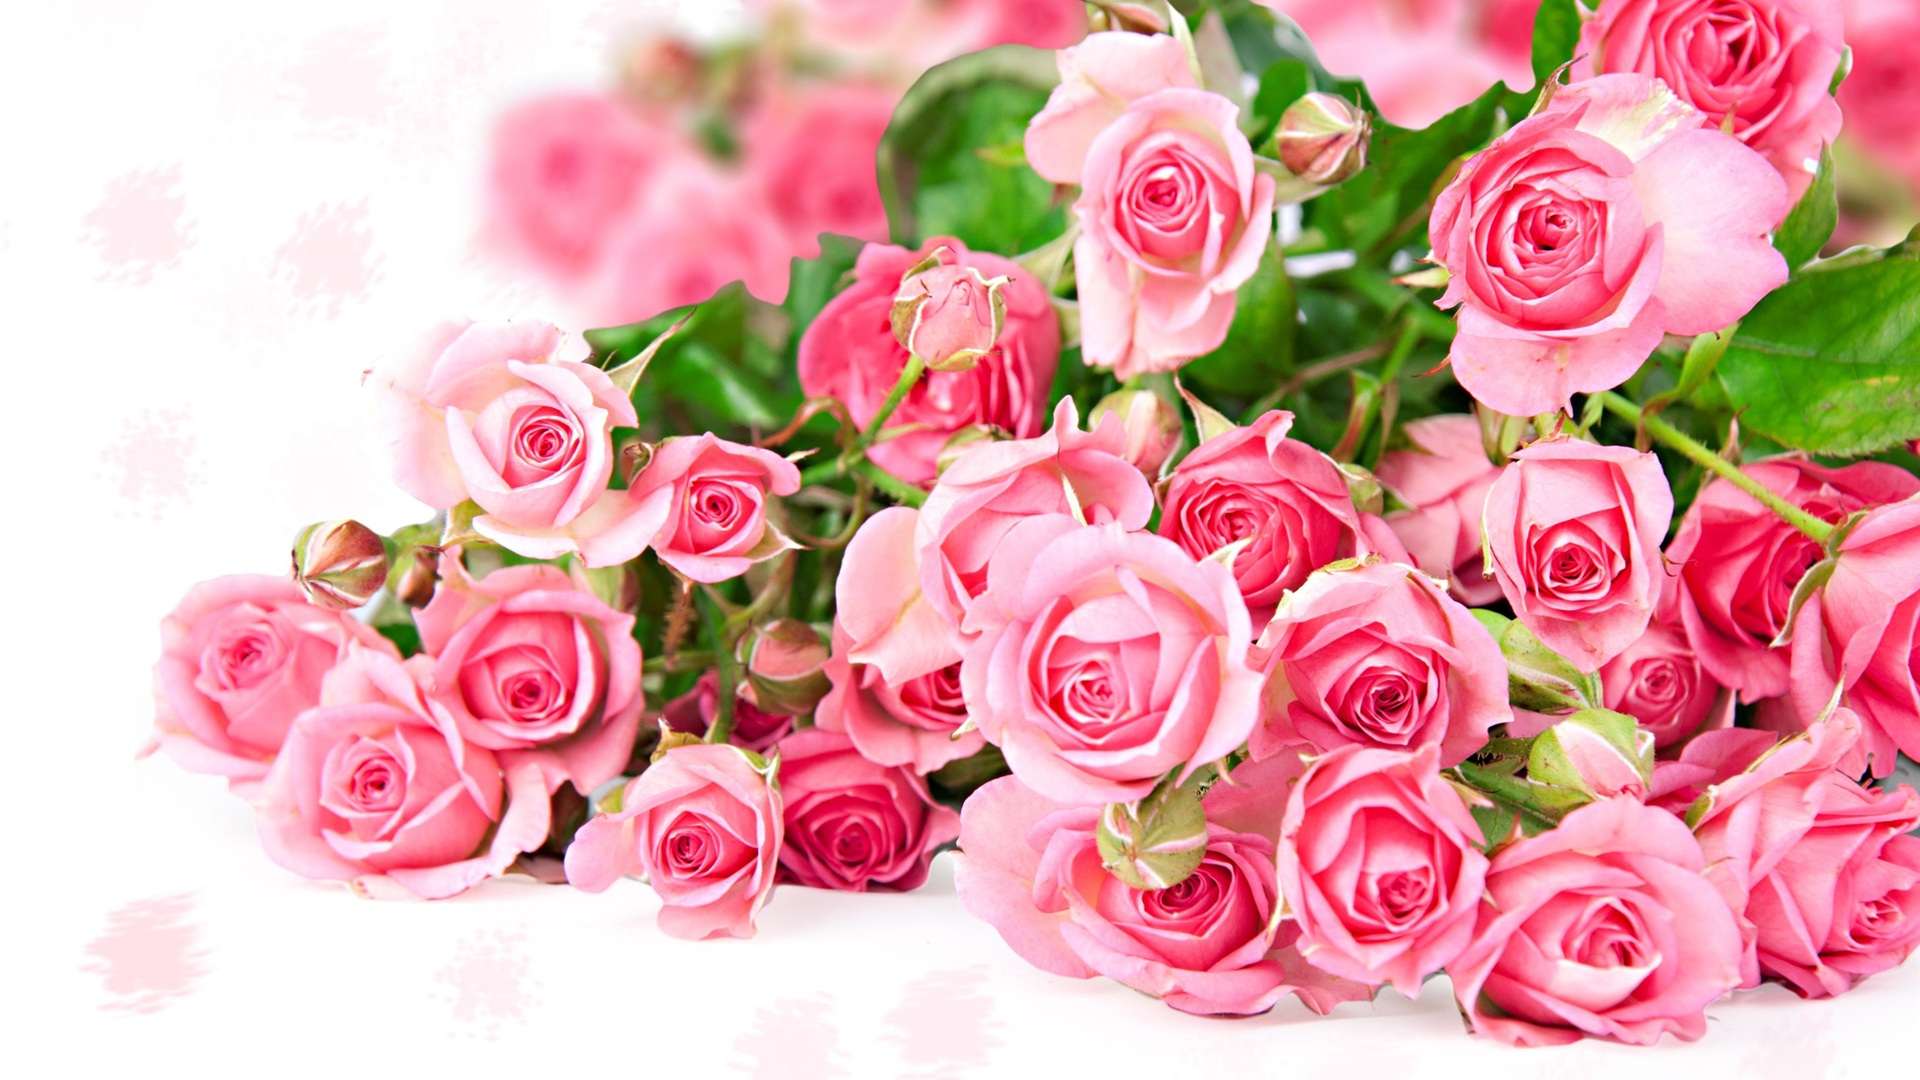 아름다운 핑크 장미 배경 화면 무료 다운로드,꽃,정원 장미,꽃 피는 식물,장미,분홍